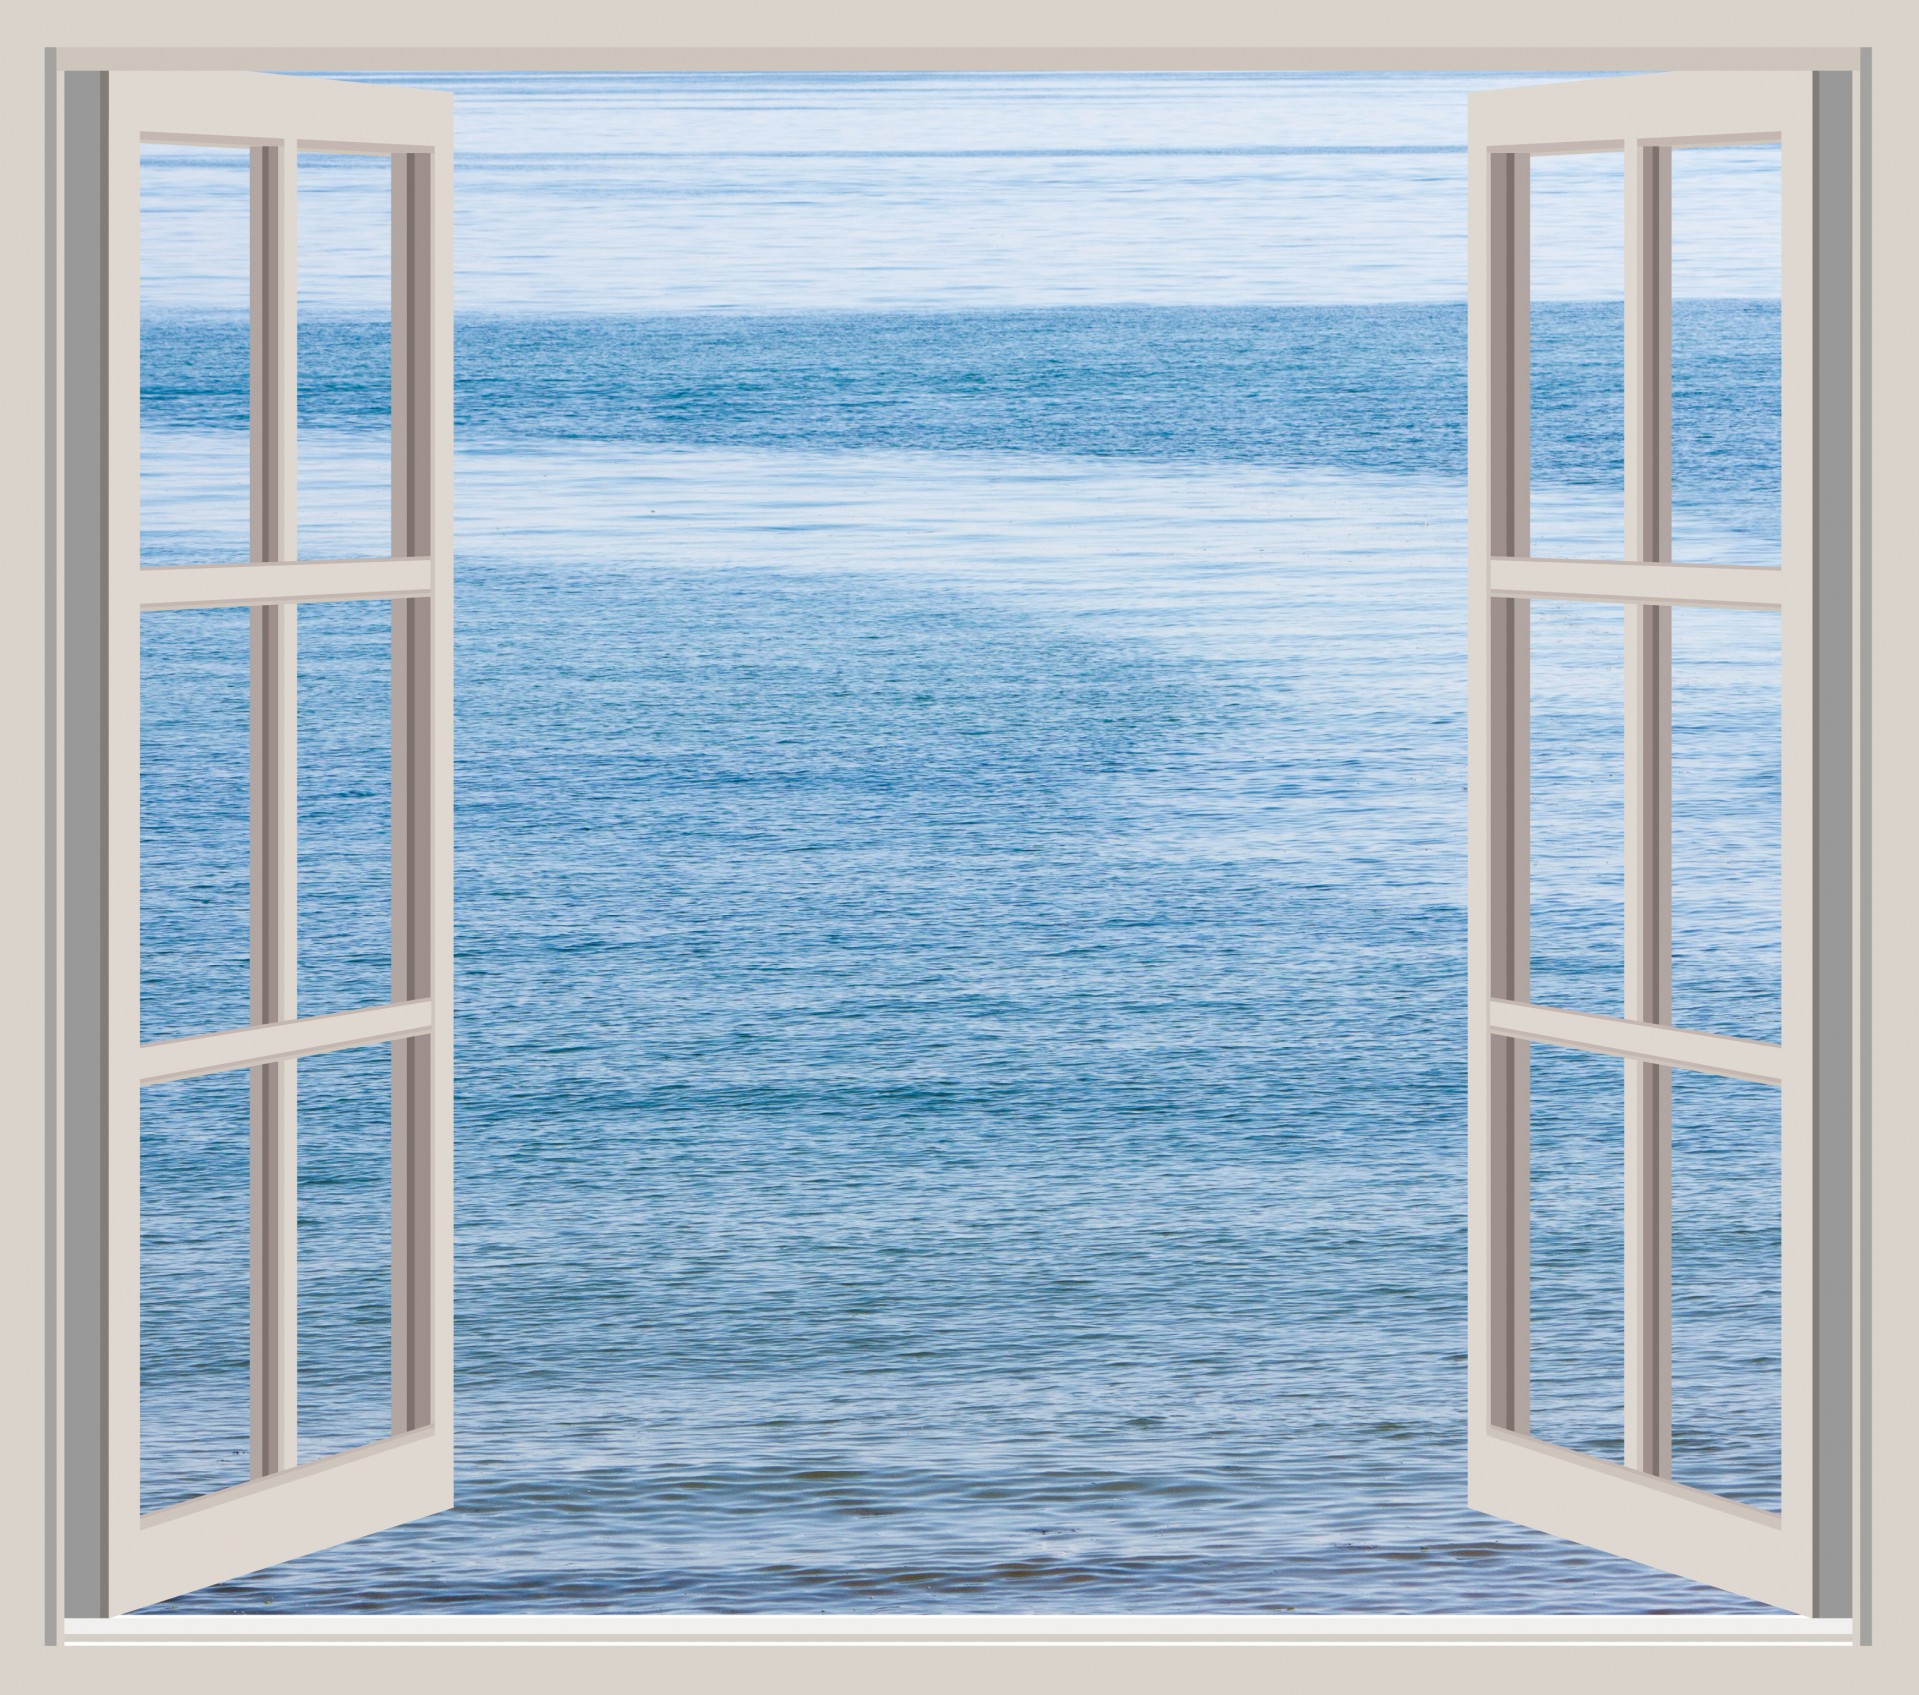 Beautiful blue ocean seen through an open window frame